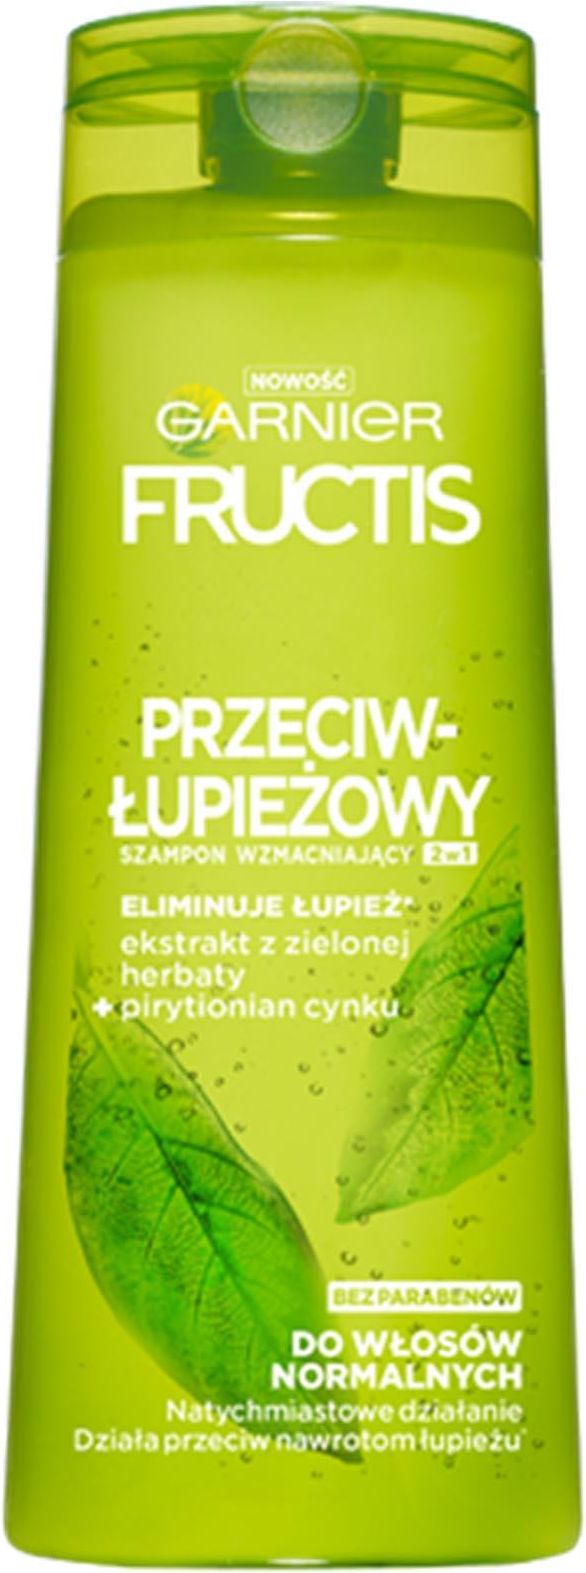 garnier fructis szampon przeciwłupieżowy 2w1